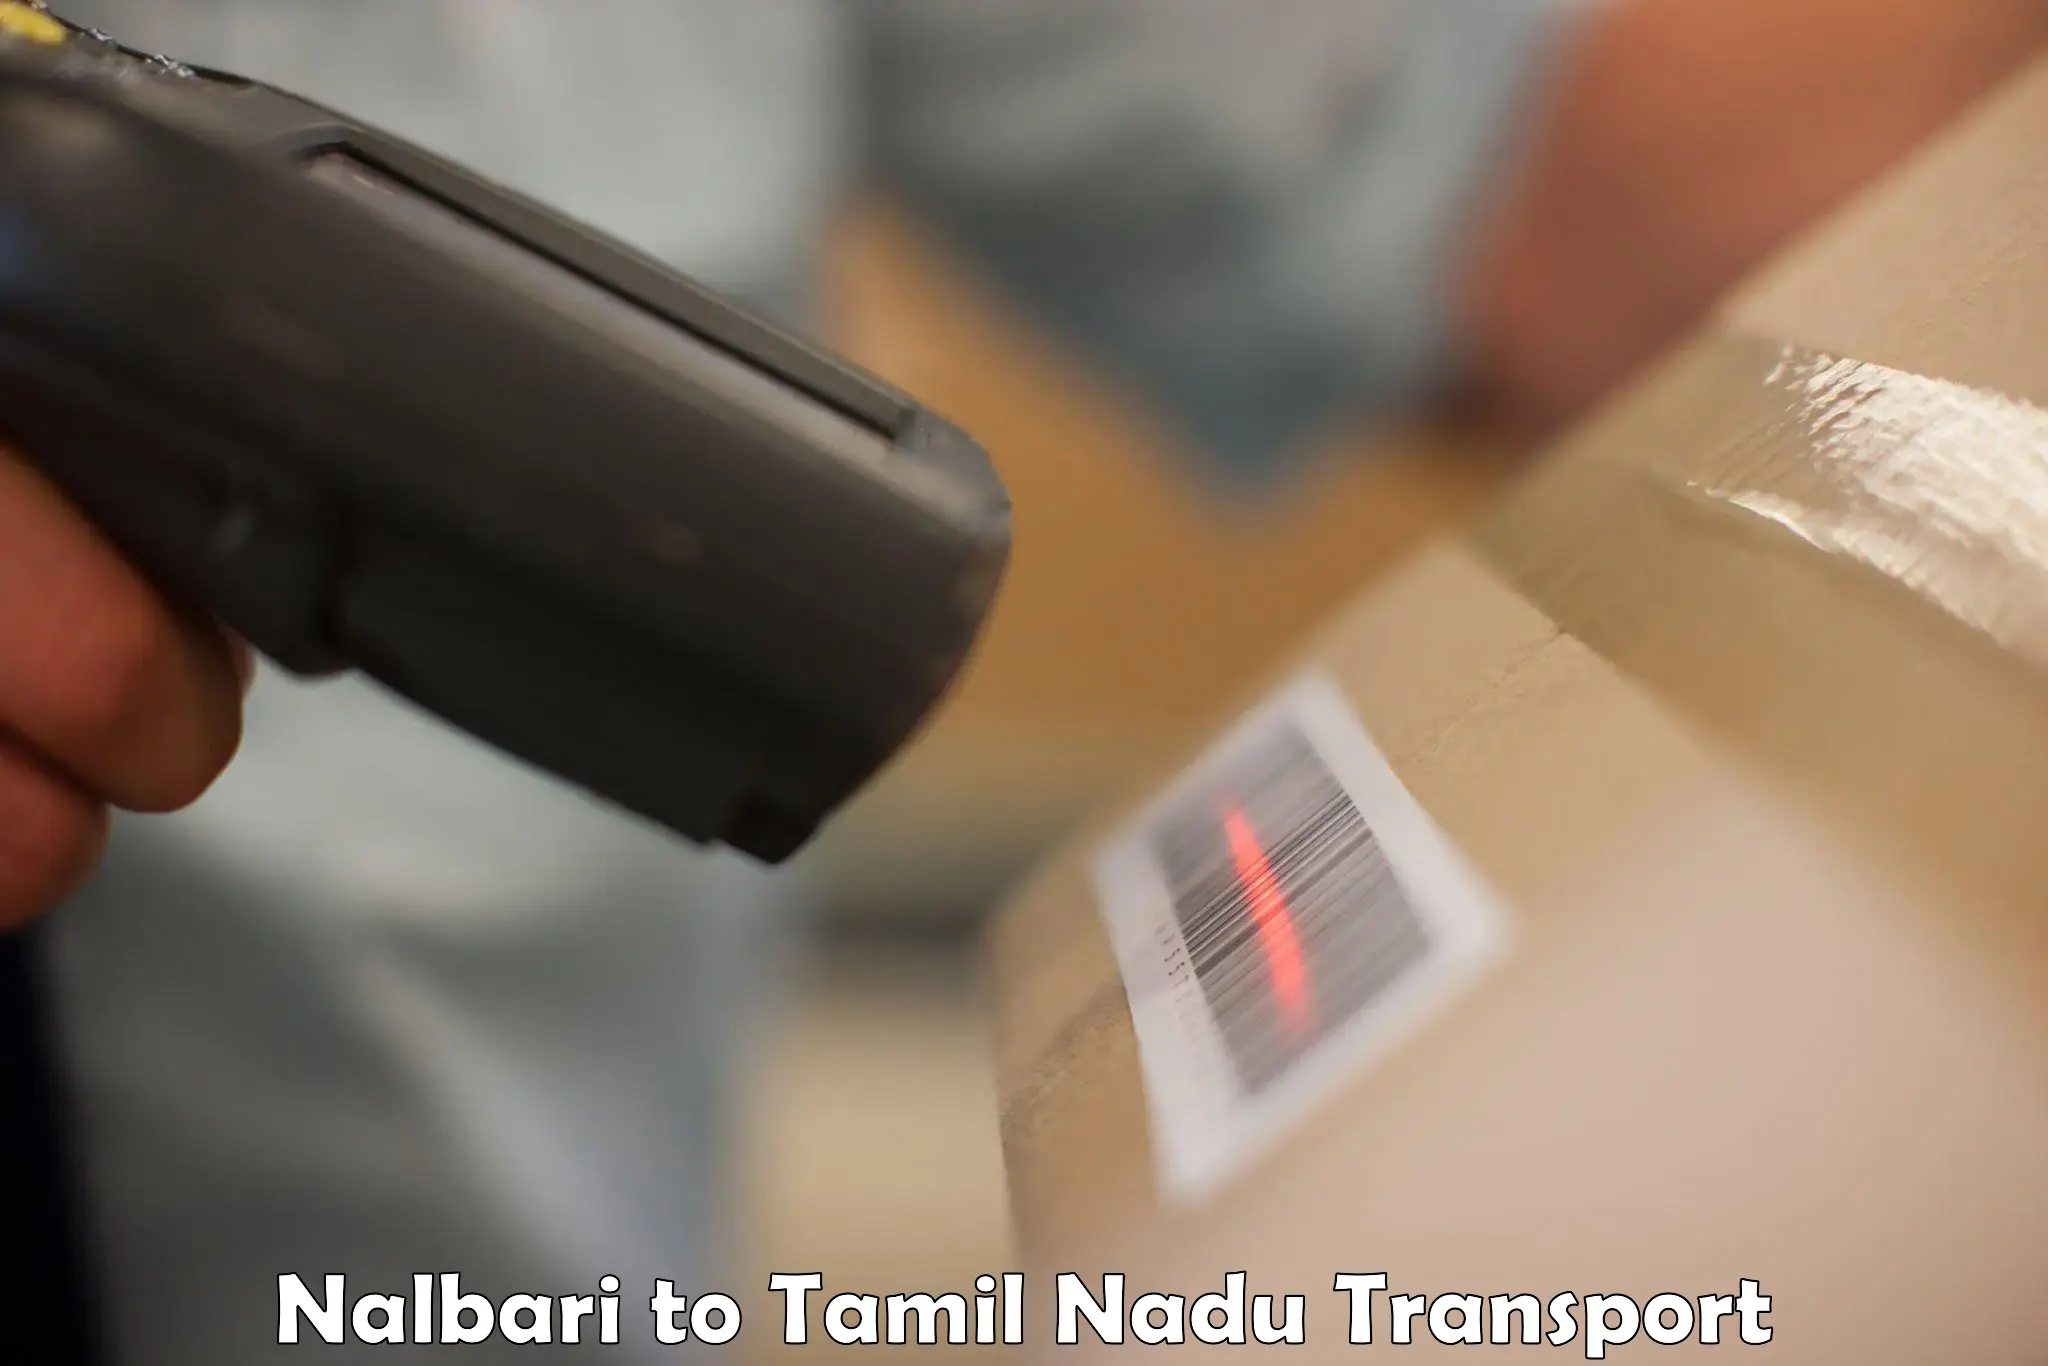 Lorry transport service Nalbari to Tiruturaipundi